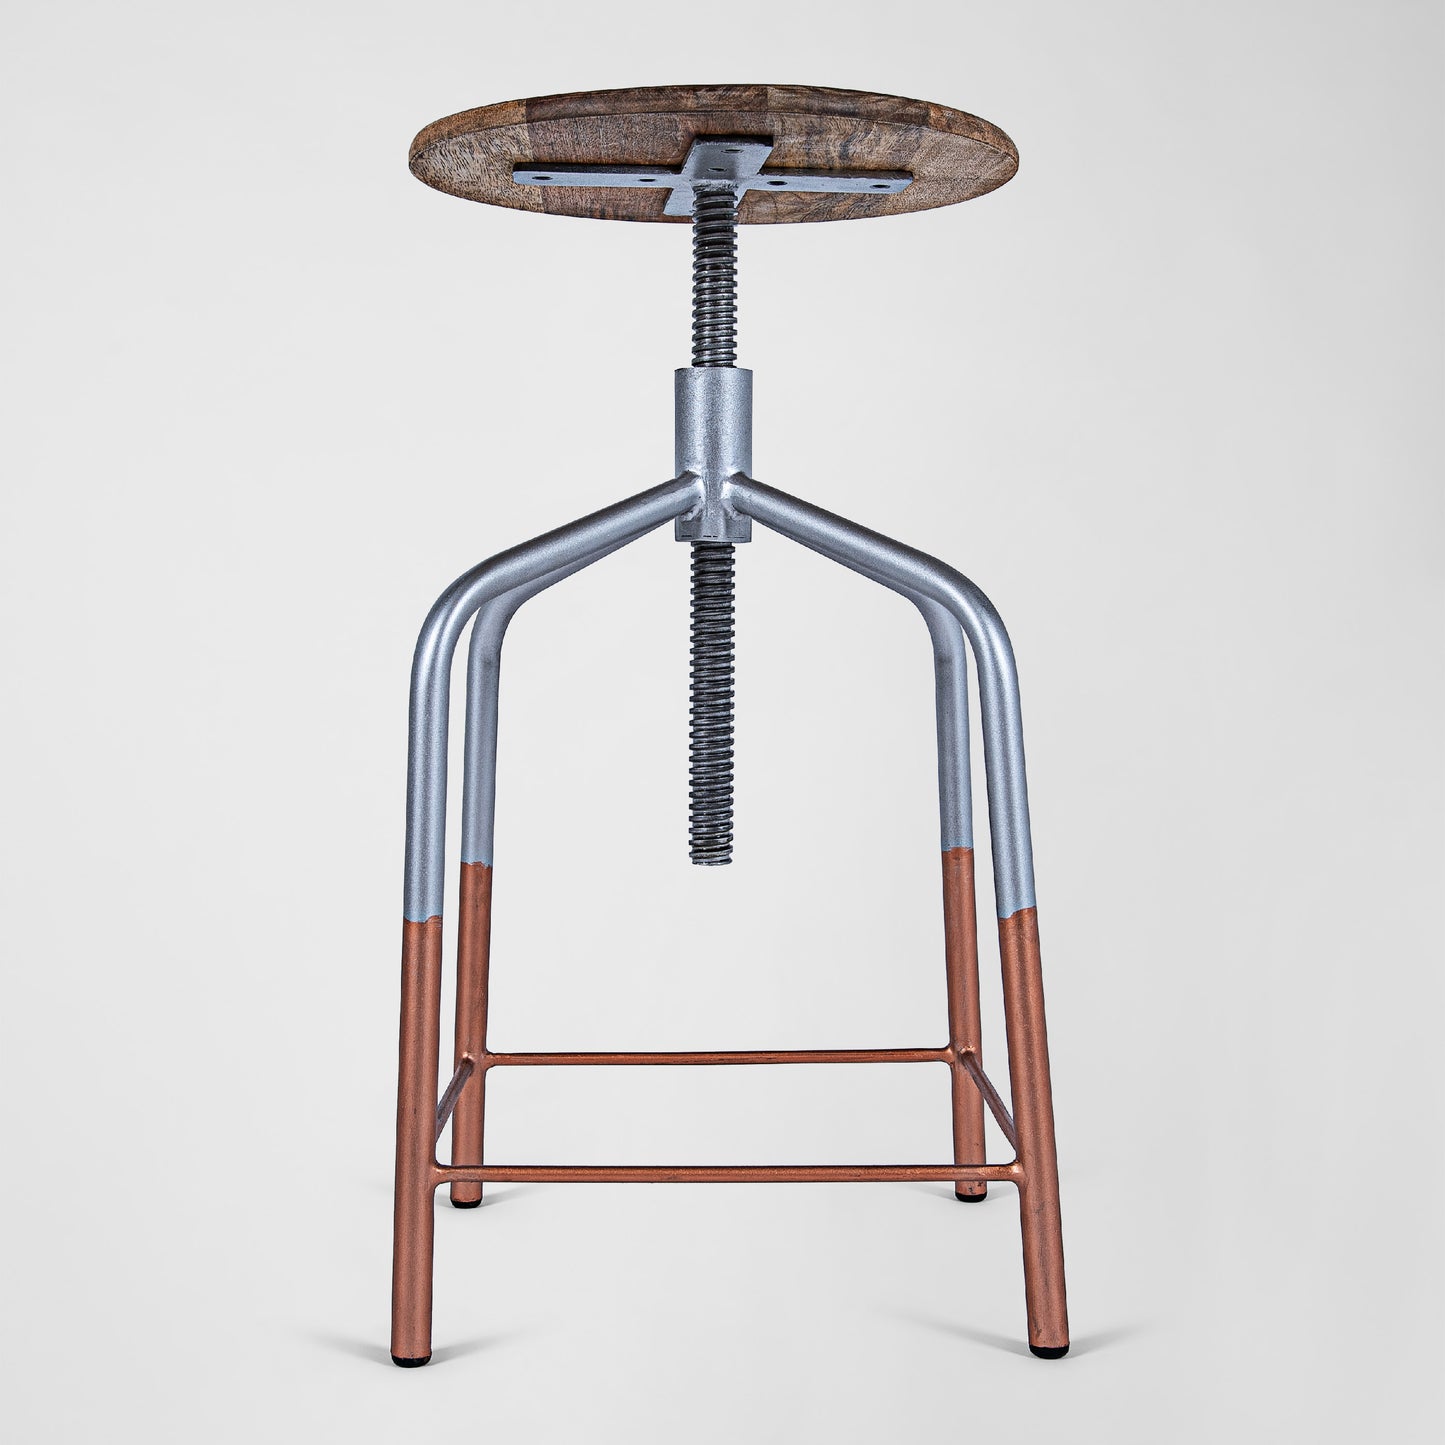 Mr. Copper Feet - Handmade Industrie-Design Dreh-Hocker aus Metall mit Holzsitz in silber mit Kupferfüßen